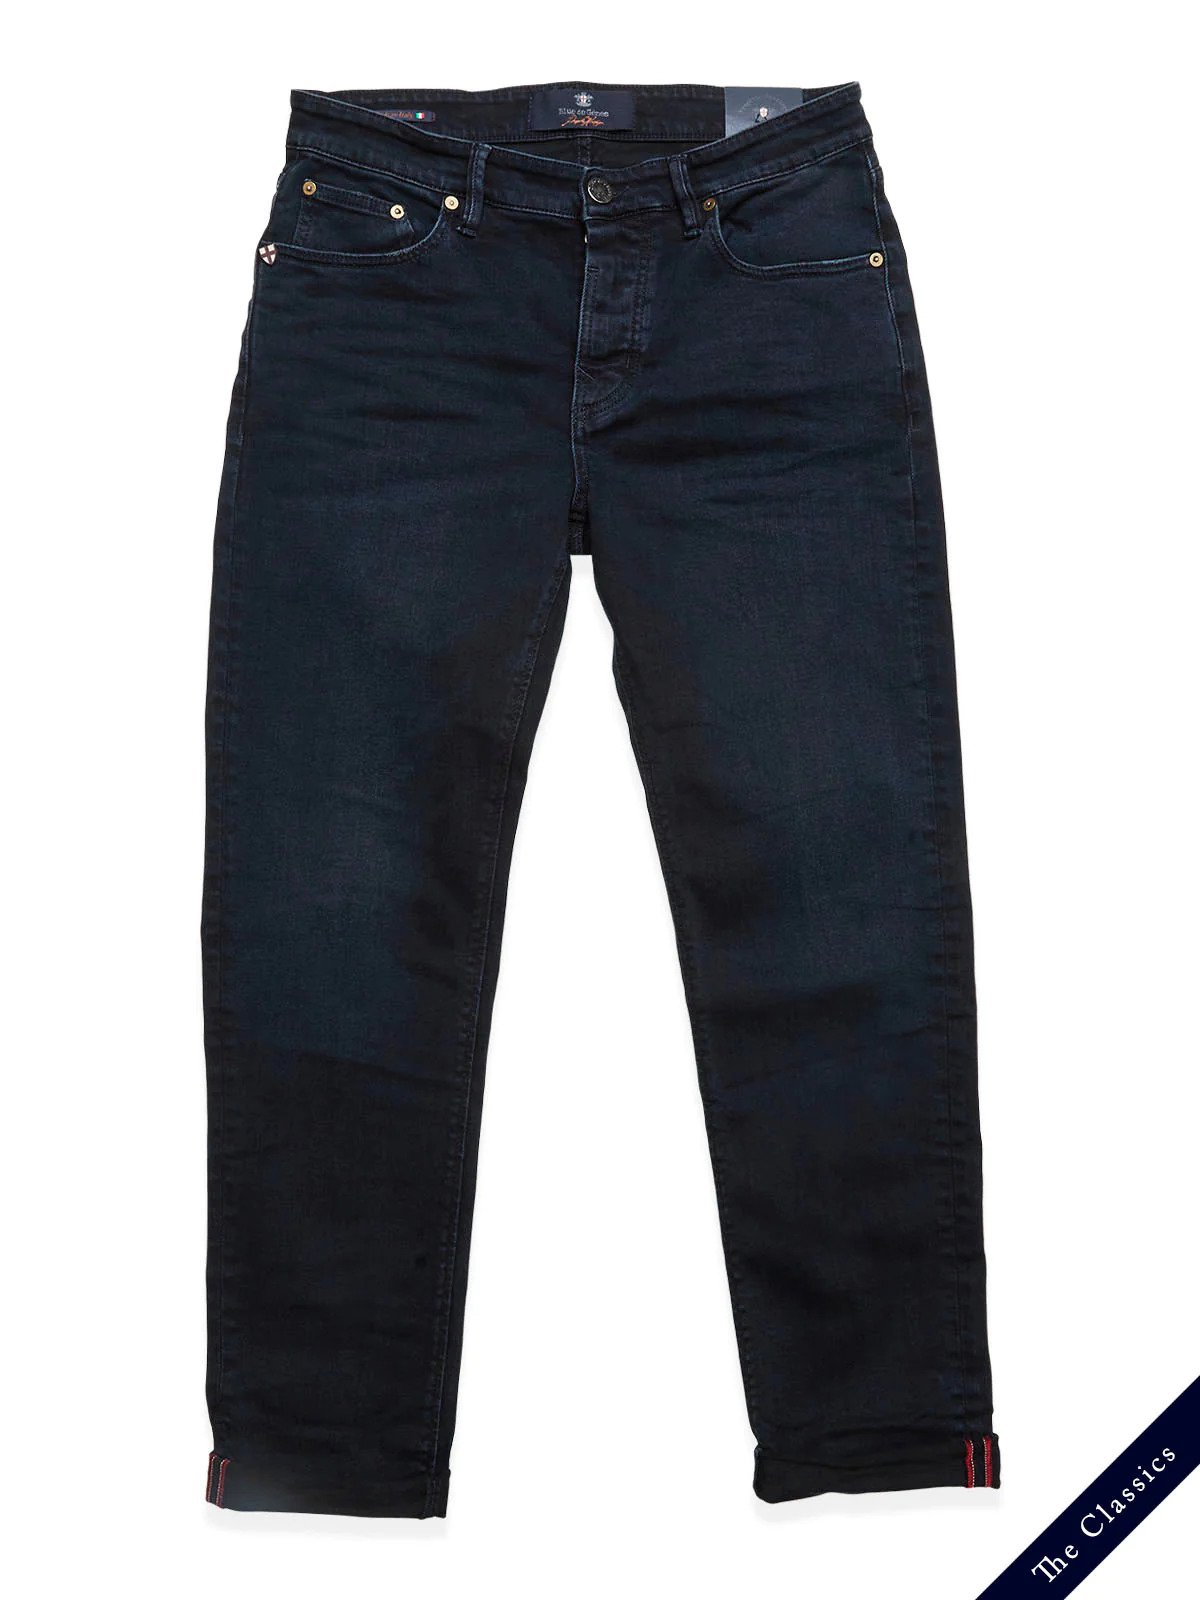 Vinci 3325 Black jeans